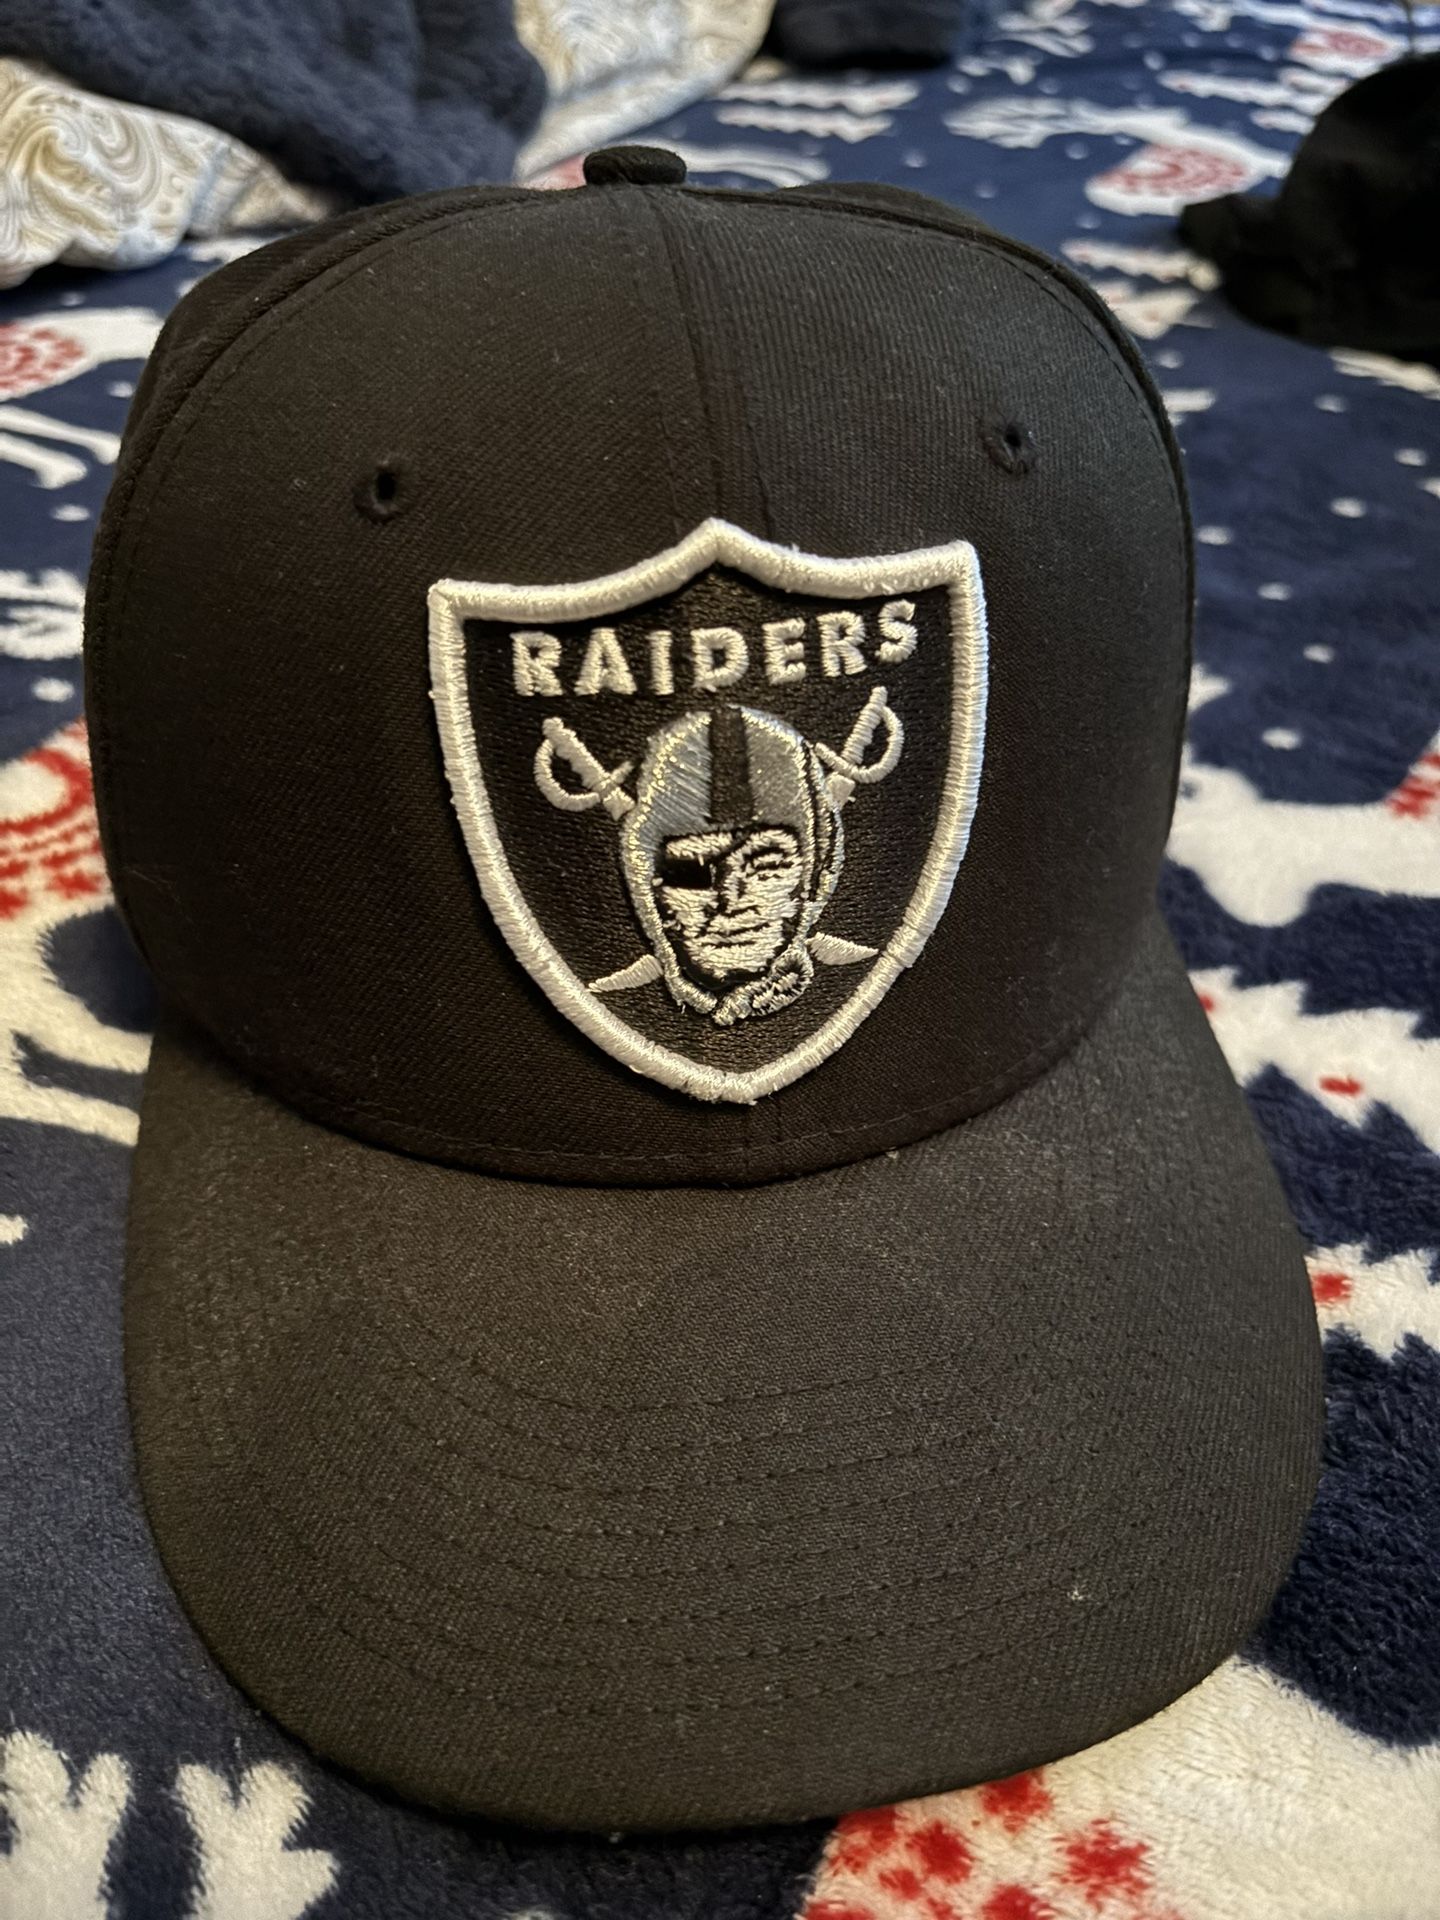 New Era Raiders Cap size 7